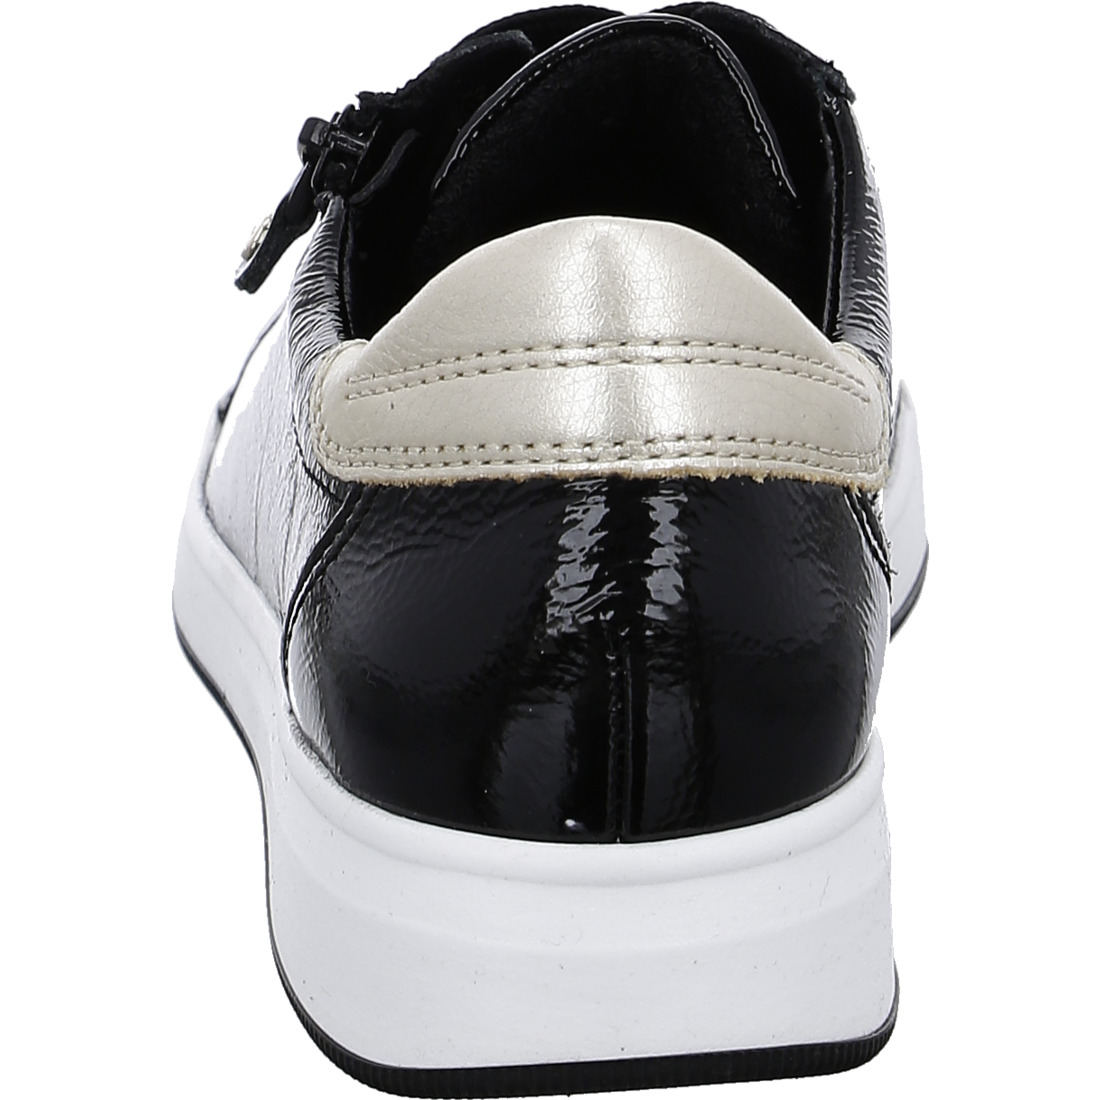 Sneakers*Ara Shoes Sneakers Baskets Rom